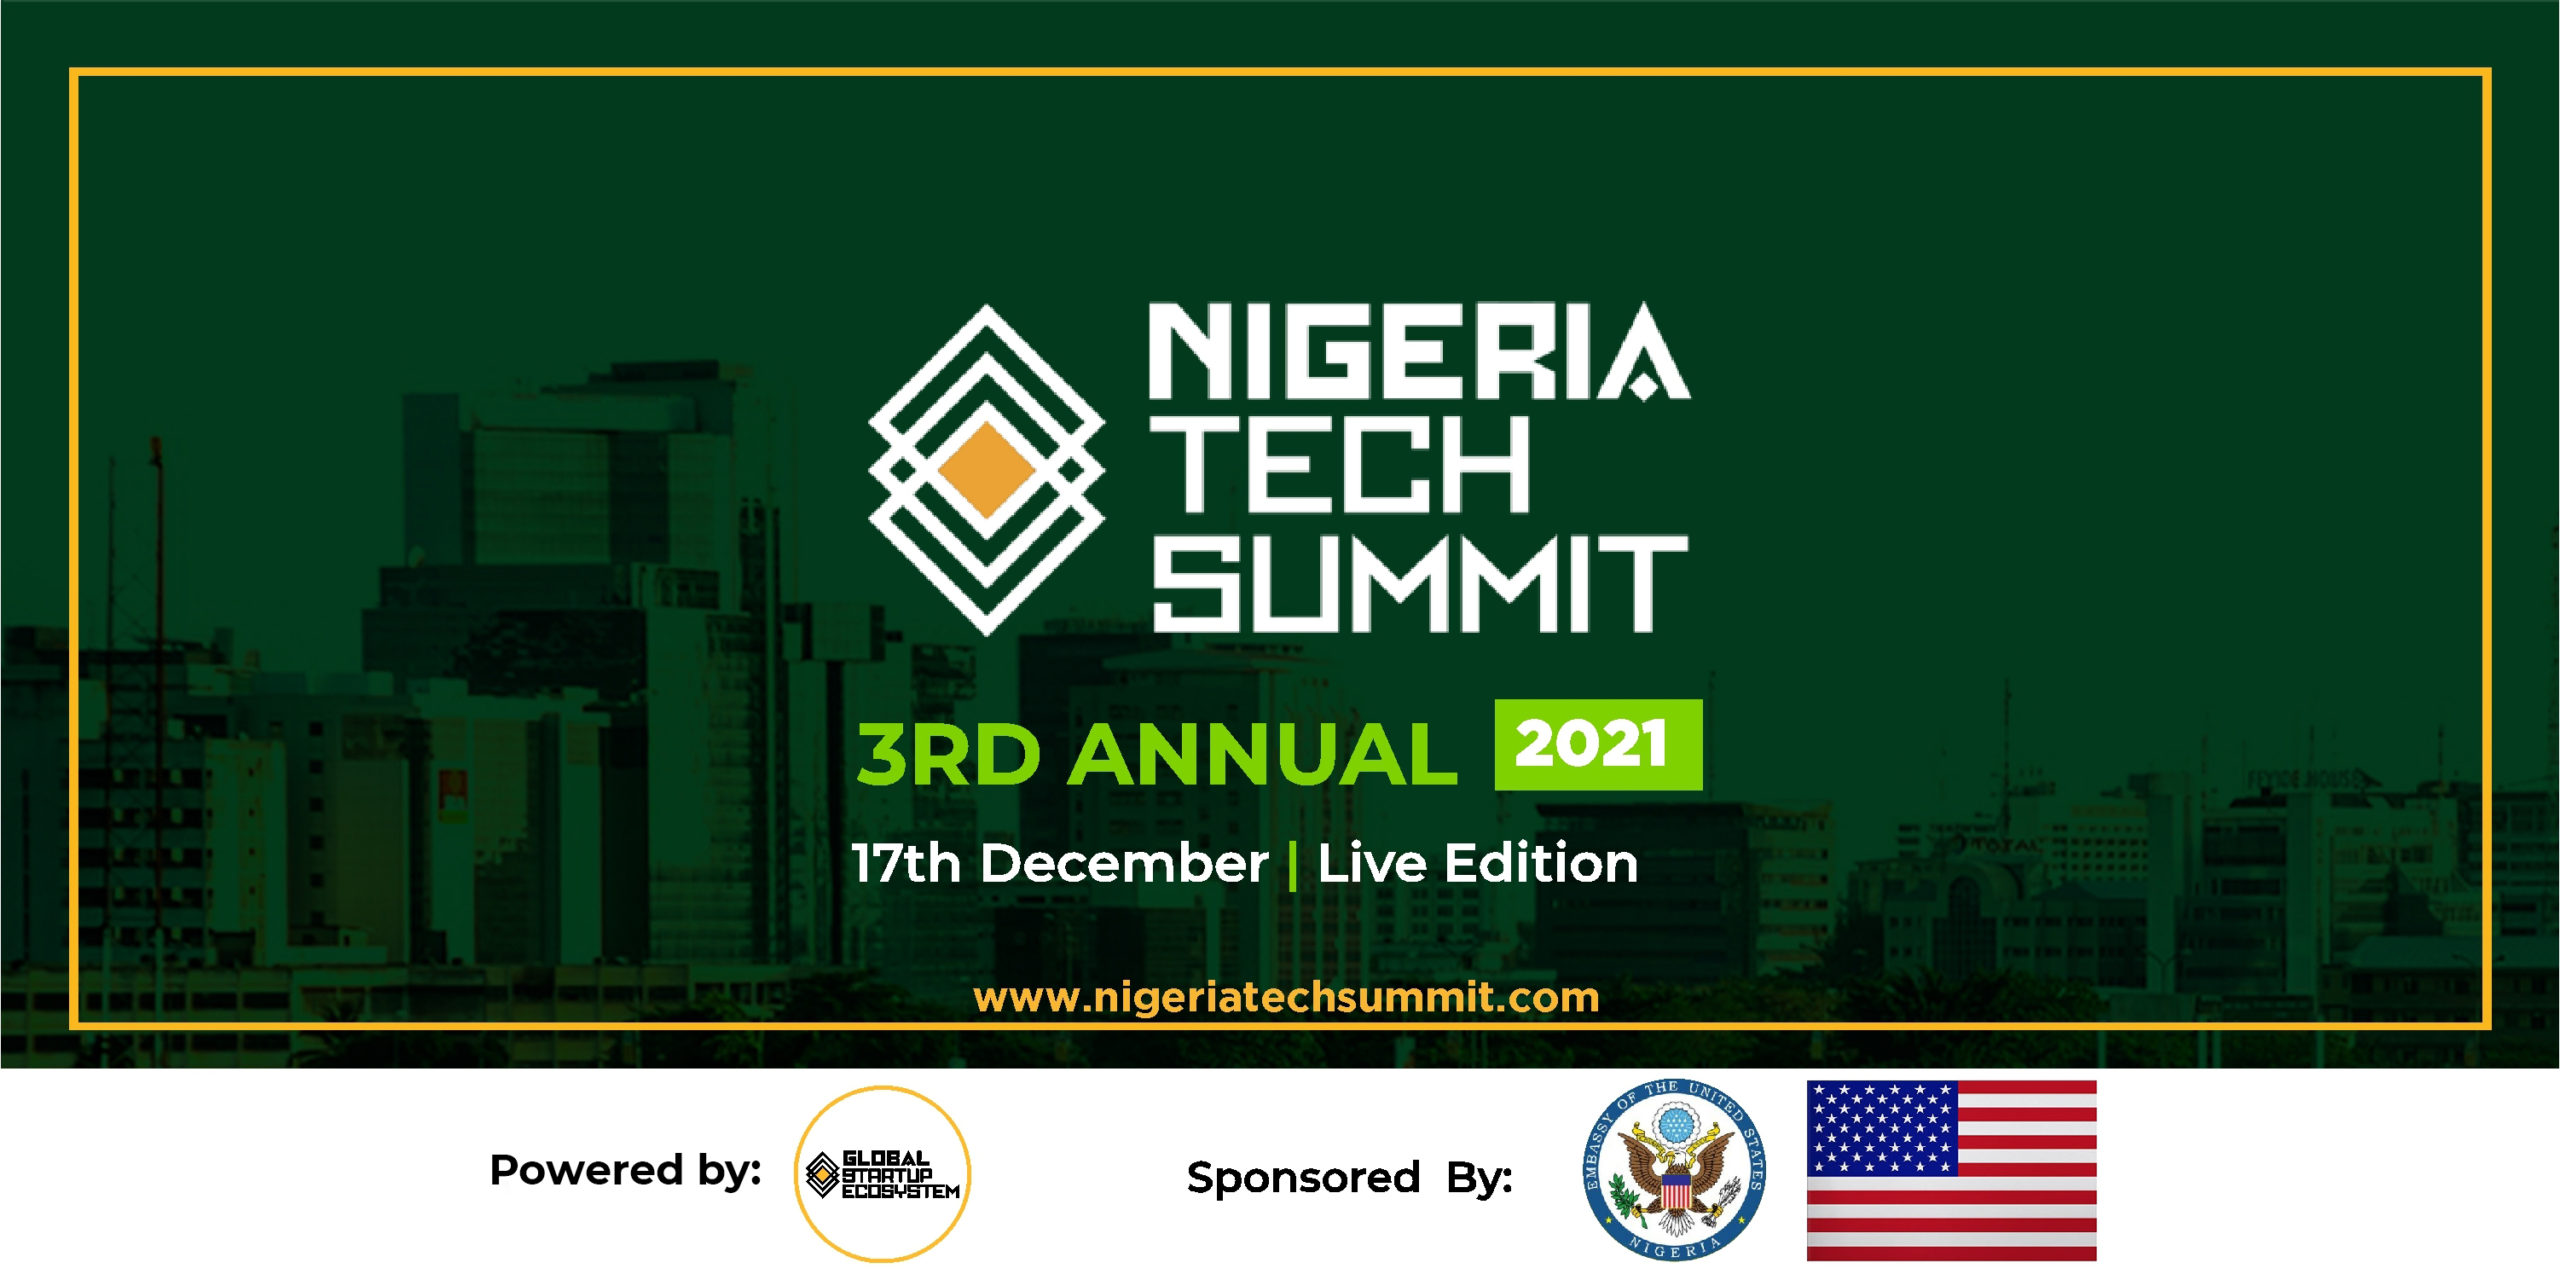 Nigeria Tech Summit